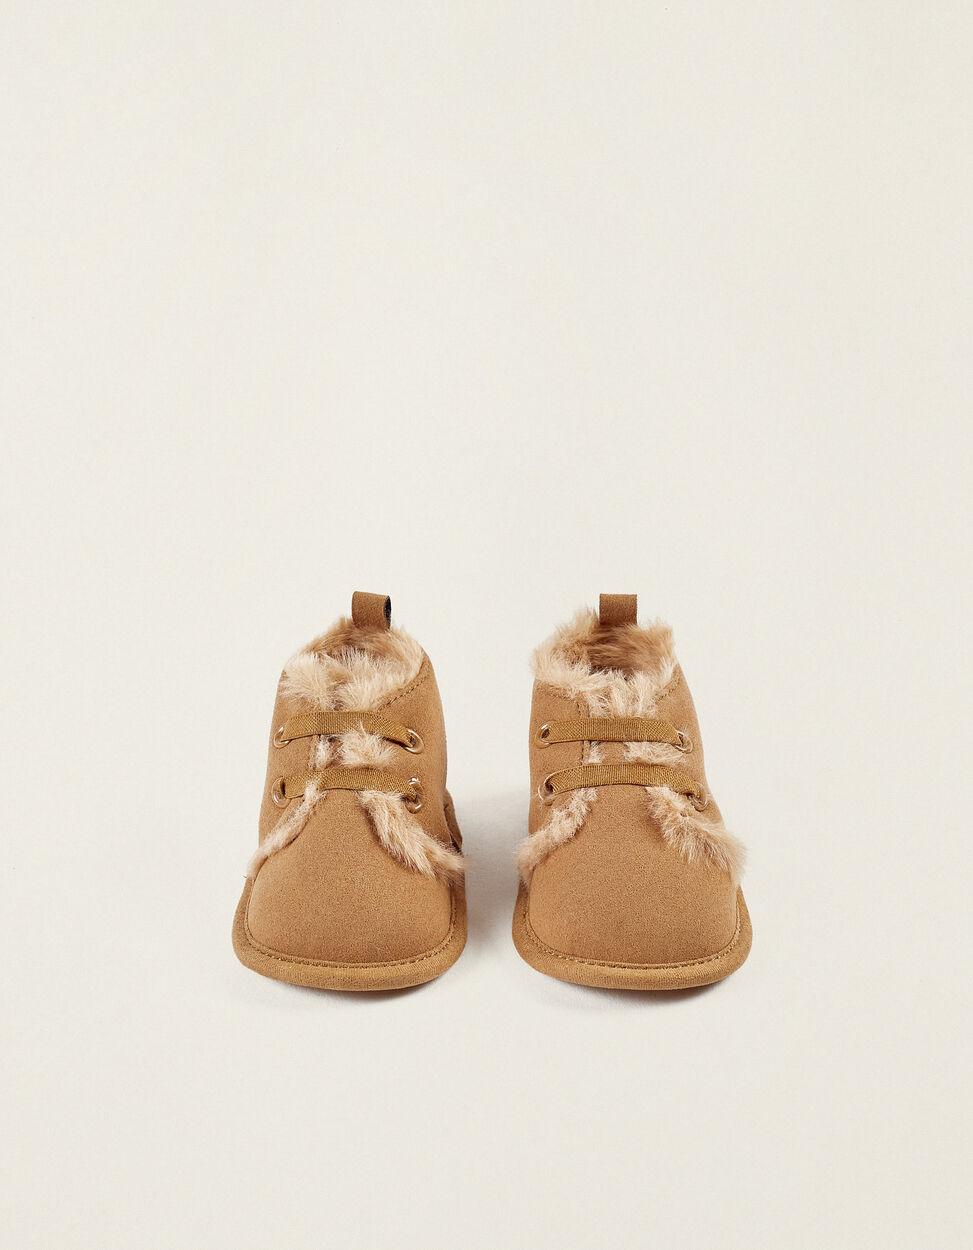 Bottes fourrées bébé fille - camel, Chaussures